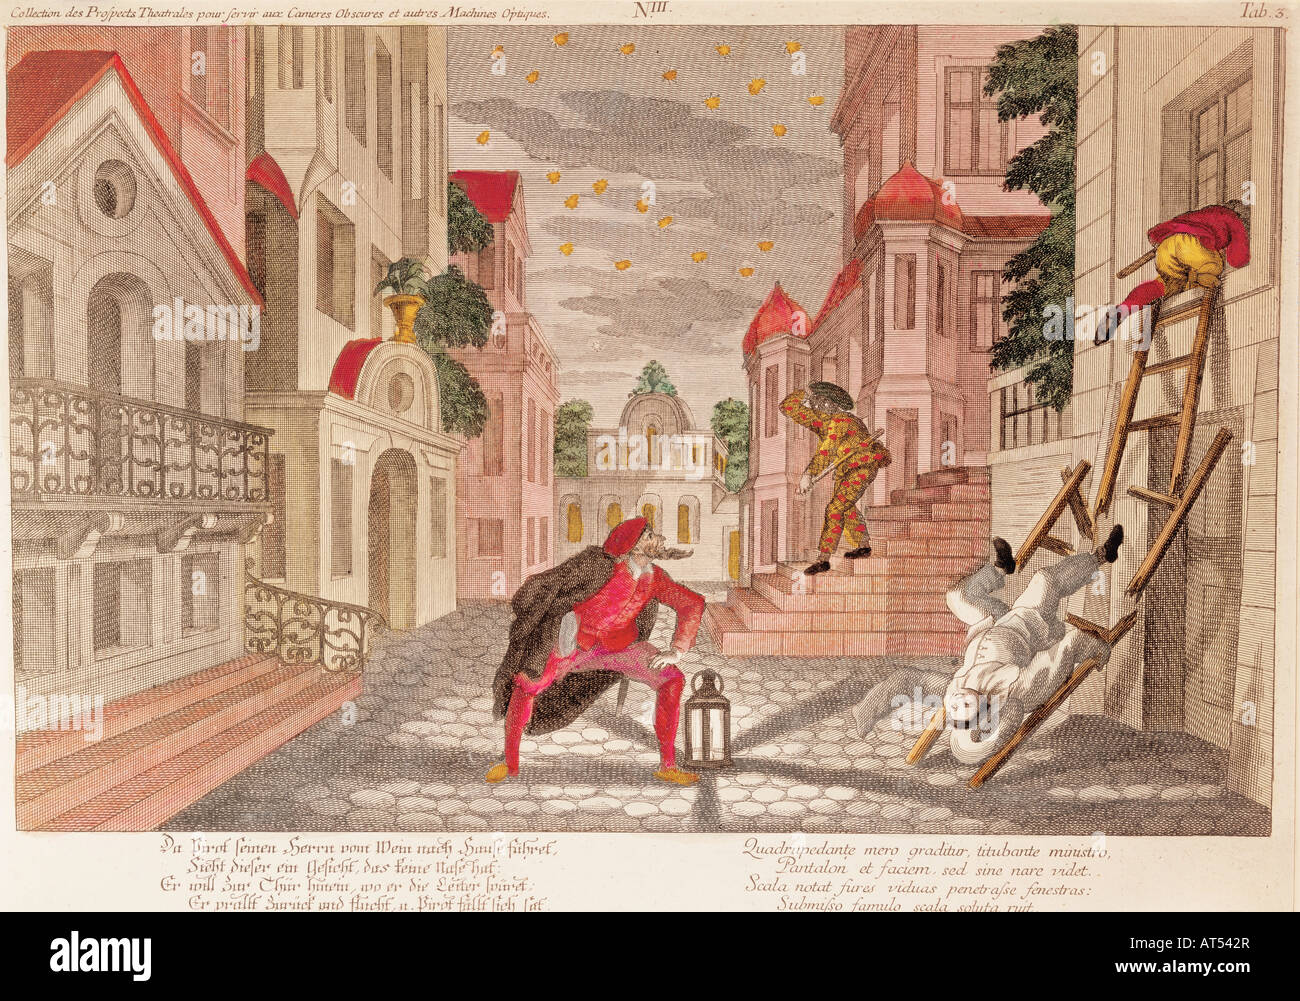 Bildende Kunst, Grafik, Szene aus der Commedia dell'Arte, Kupferstich, farbig, von Philipp Andreas Degmair (1711-1771), 39 cm x 25,5 cm, Artist's Urheberrecht nicht geklärt zu werden. Stockfoto